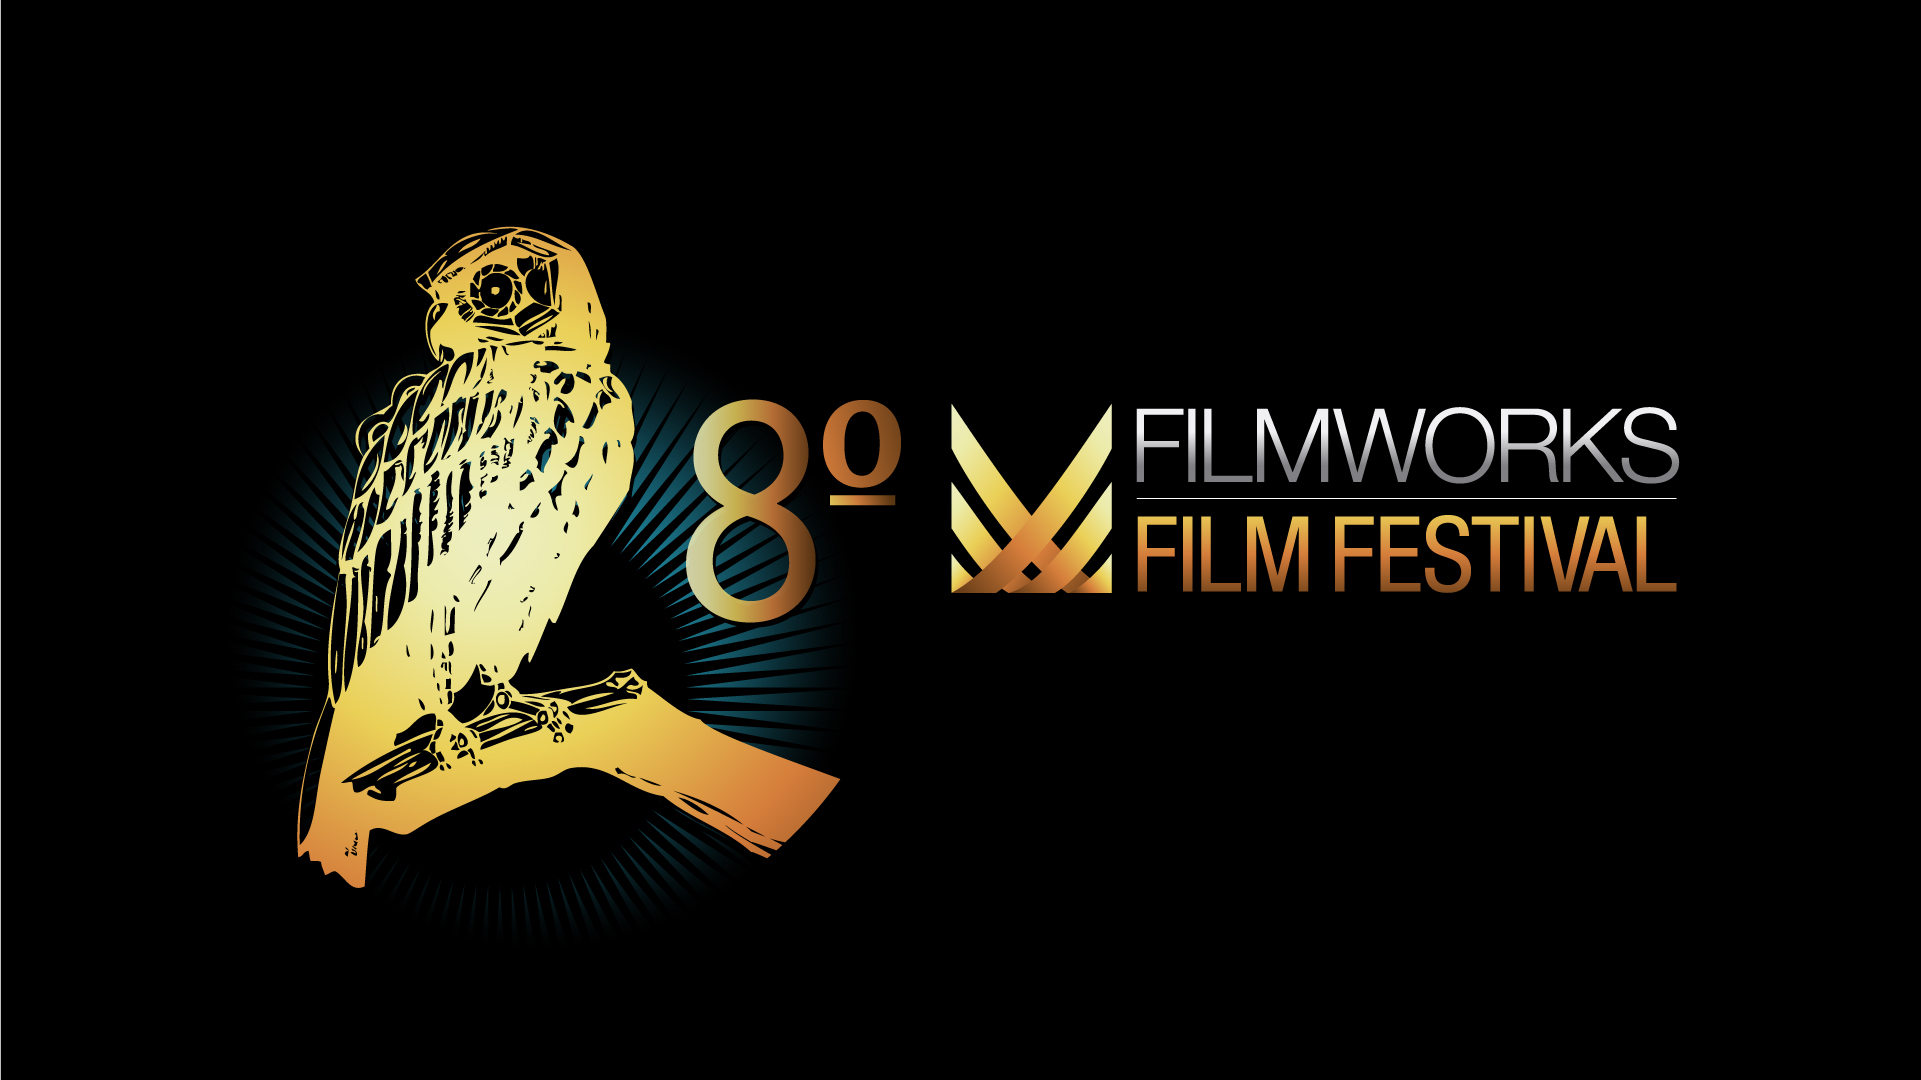 Filmworks Film Festival 2017